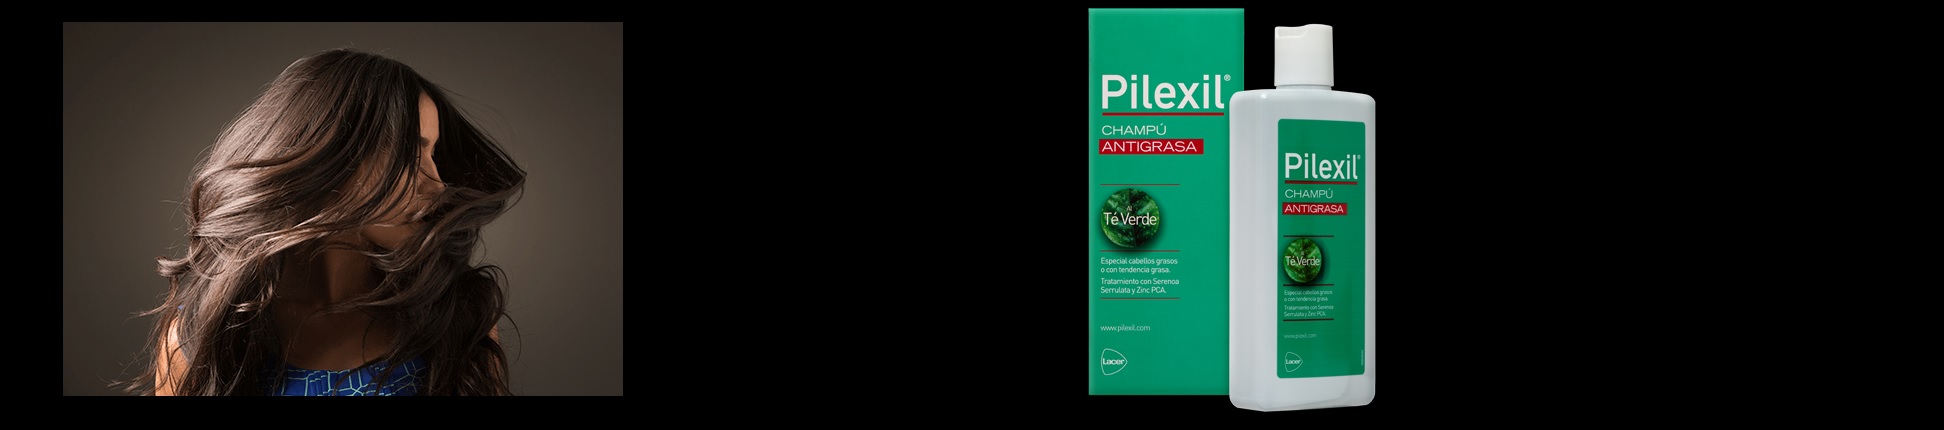 Shampoo anti-gordura Pilexil em Farma2go